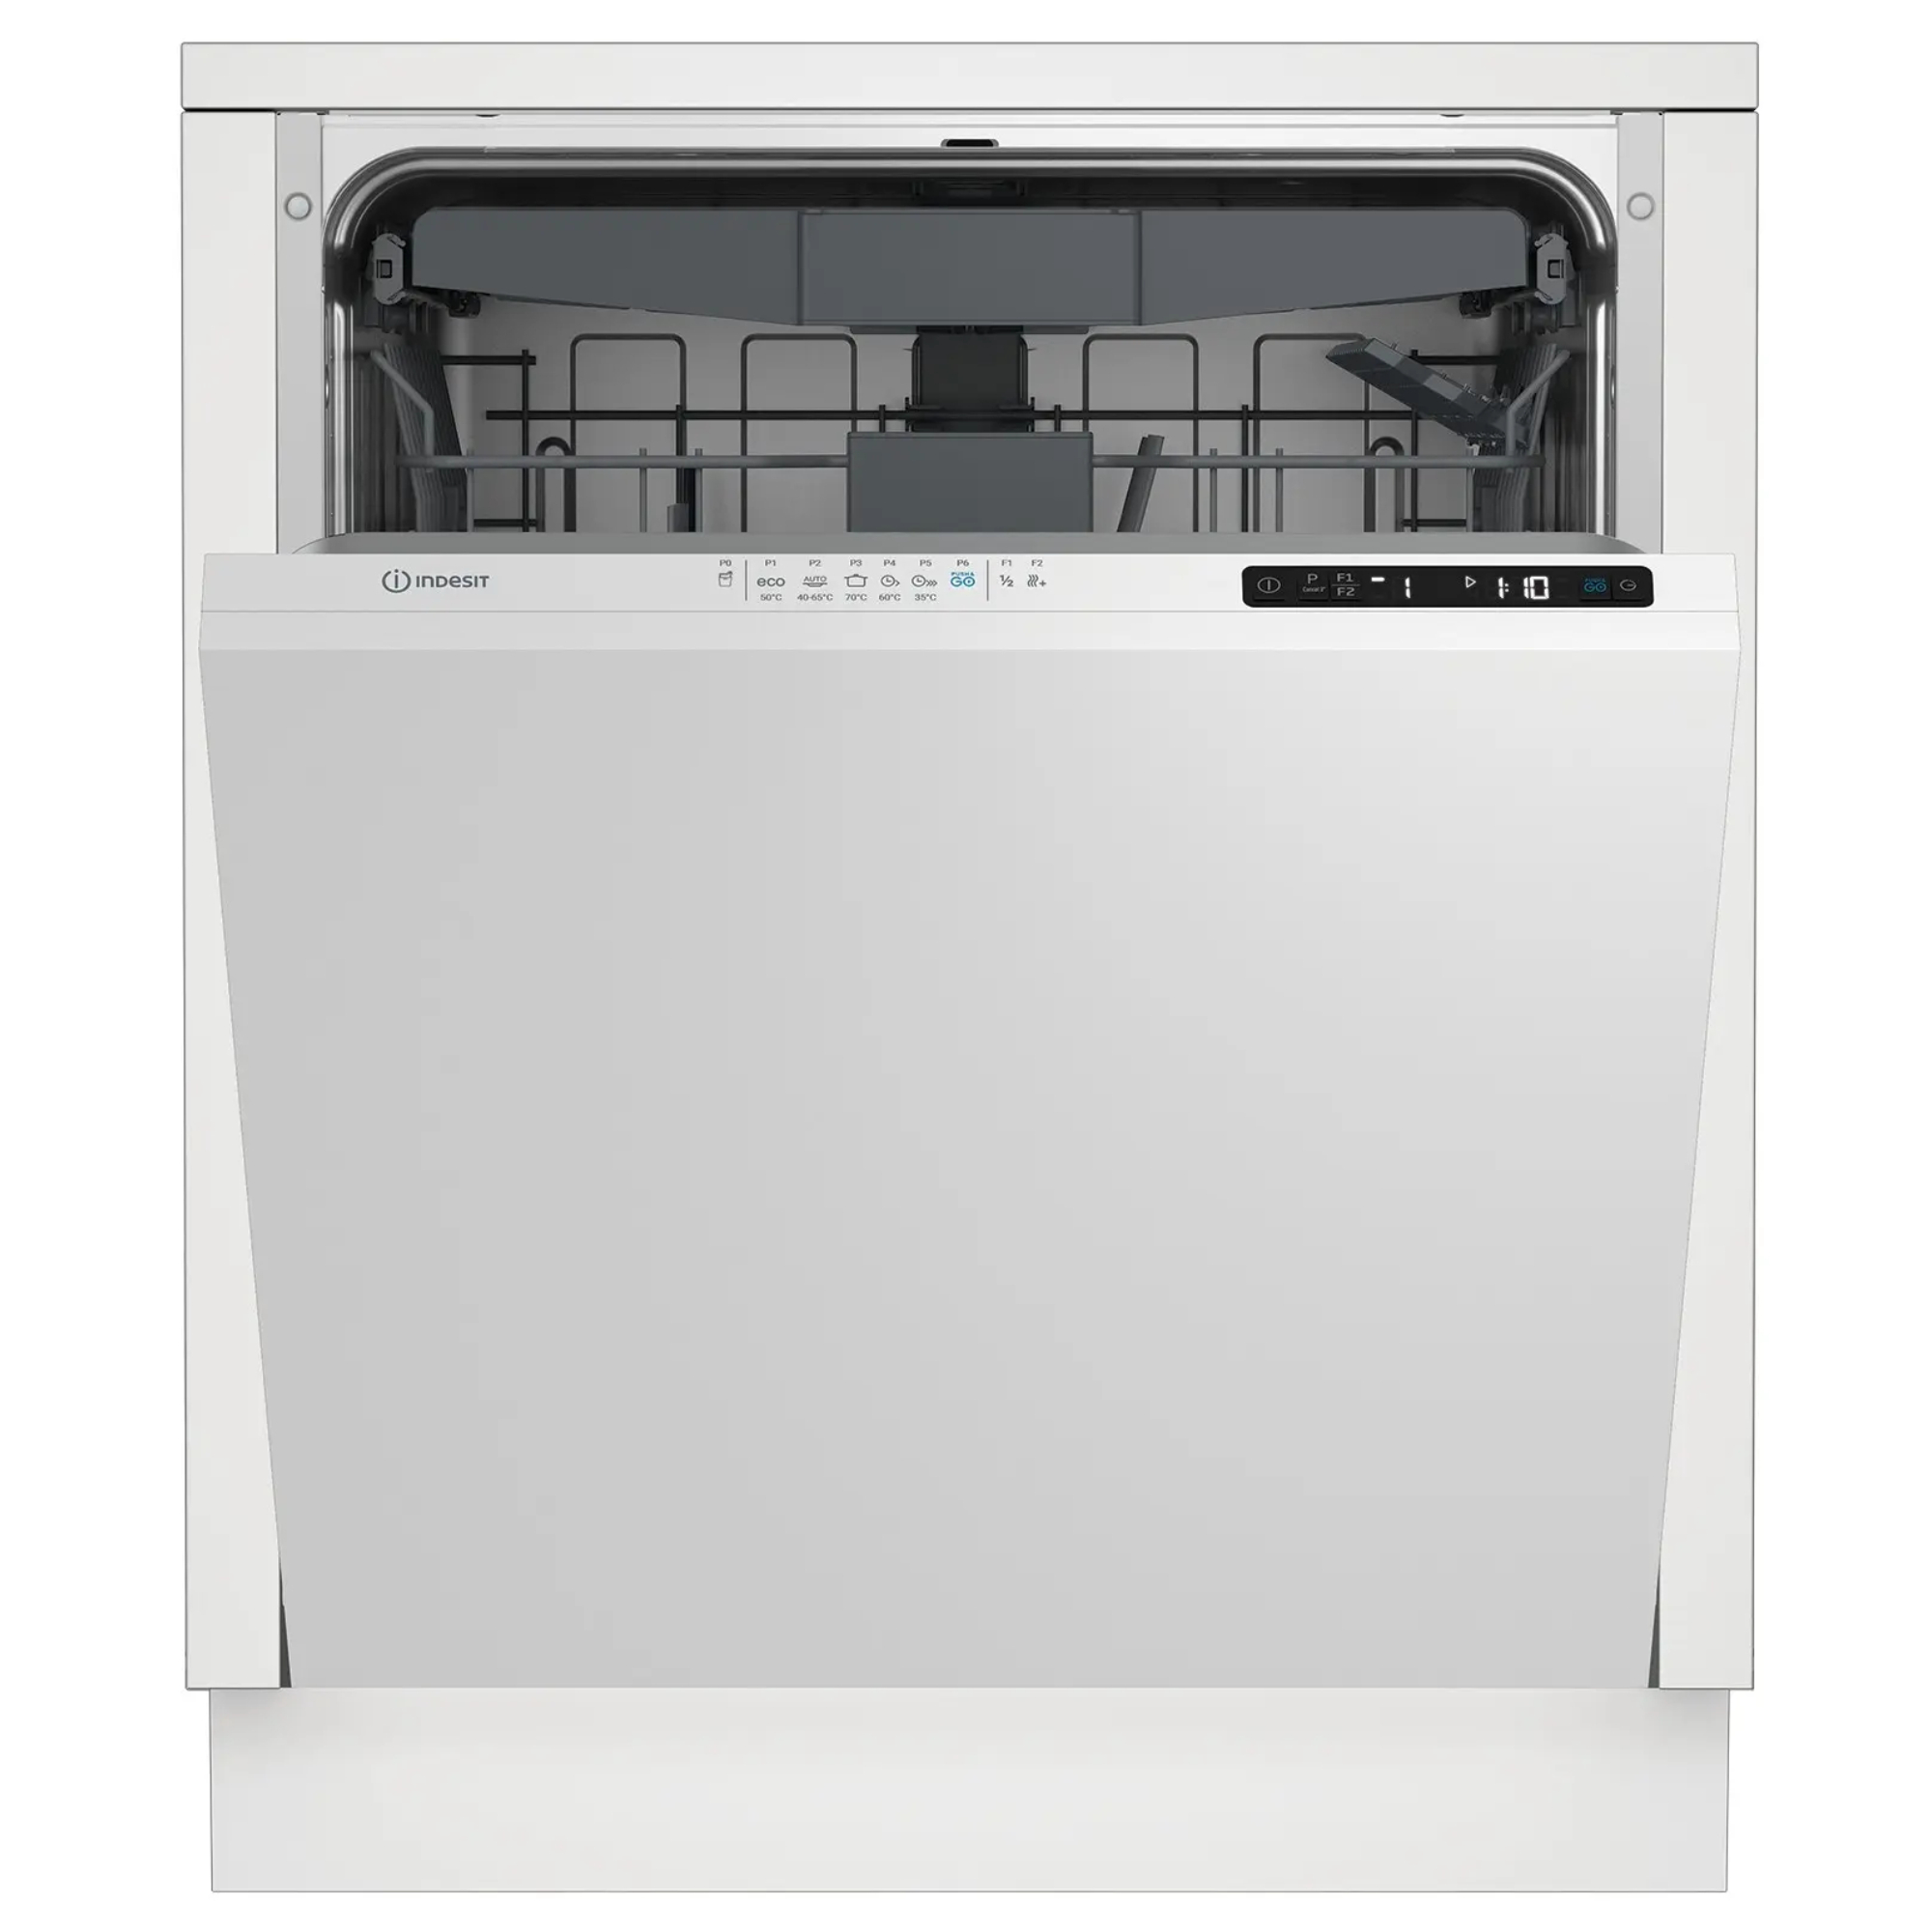 Встраиваемая посудомоечная машина Indesit DI 5C65 AED посудомоечная машина indesit dfs 1a59 s серая